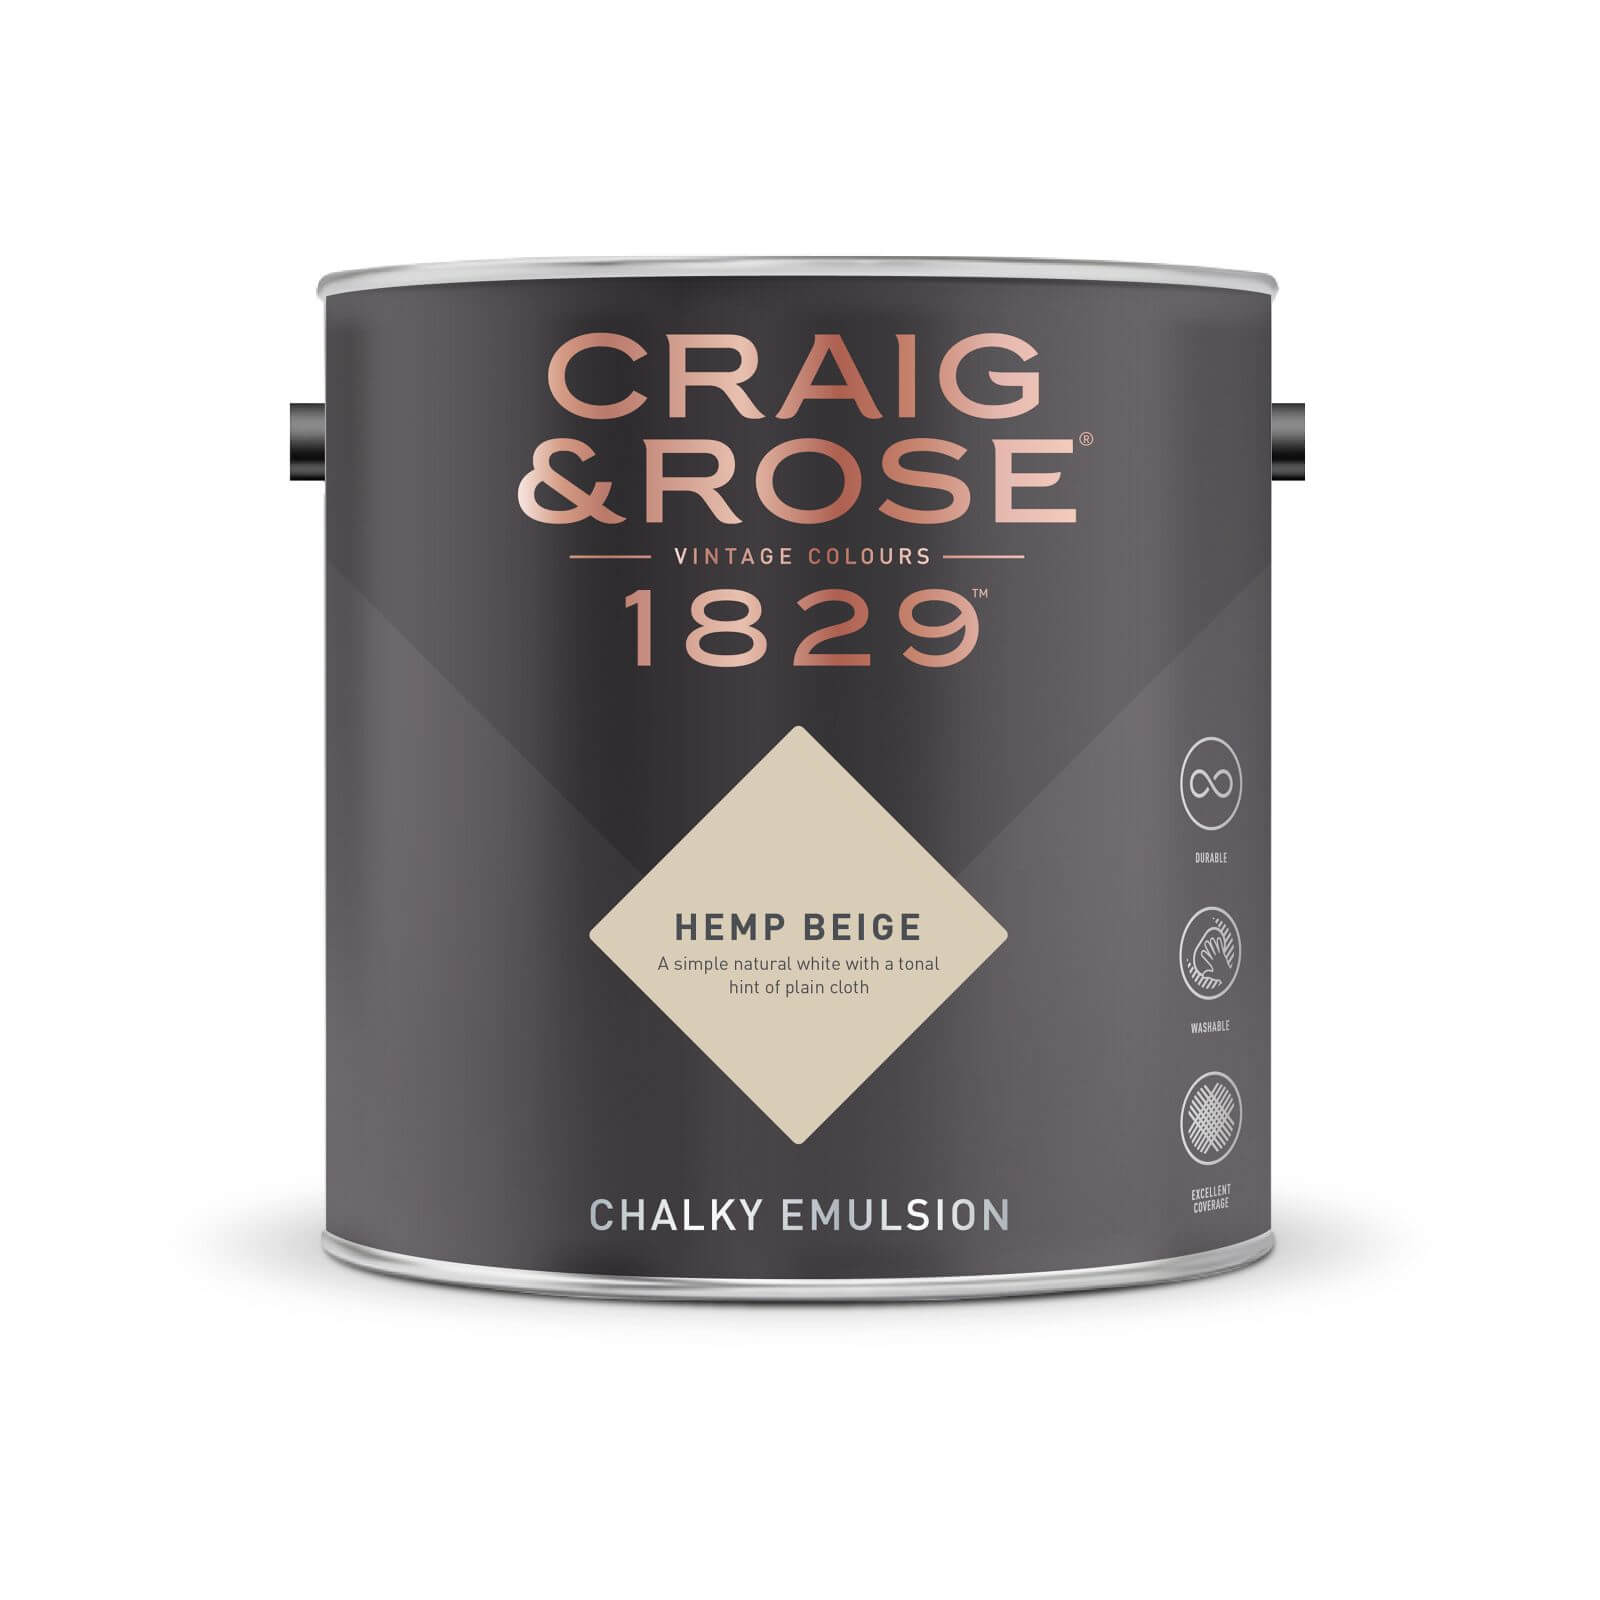 Craig & Rose 1829 Chalky Emulsion Paint Hemp Beige - 5L